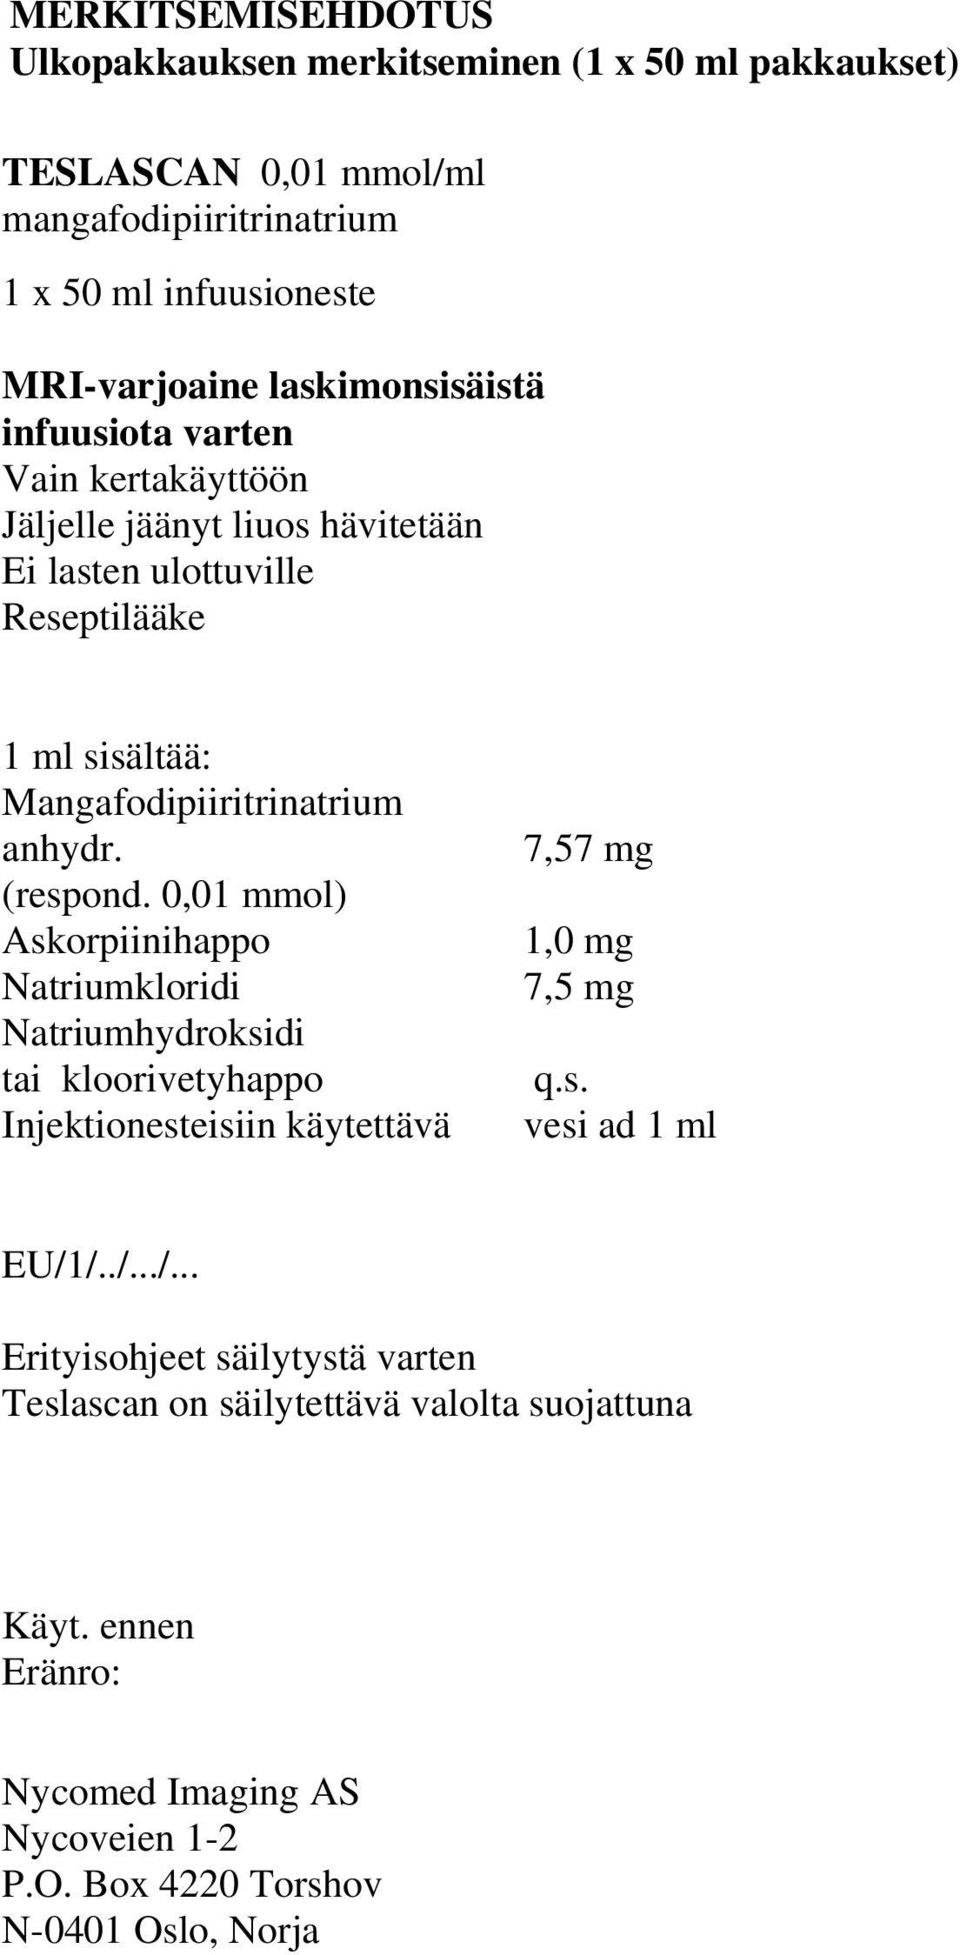 (respond. 0,01 mmol) Askorpiinihappo Natriumkloridi Natriumhydroksidi tai kloorivetyhappo Injektionesteisiin käytettävä 7,57 mg 1,0 mg 7,5 mg q.s. vesi ad 1 ml EU/1